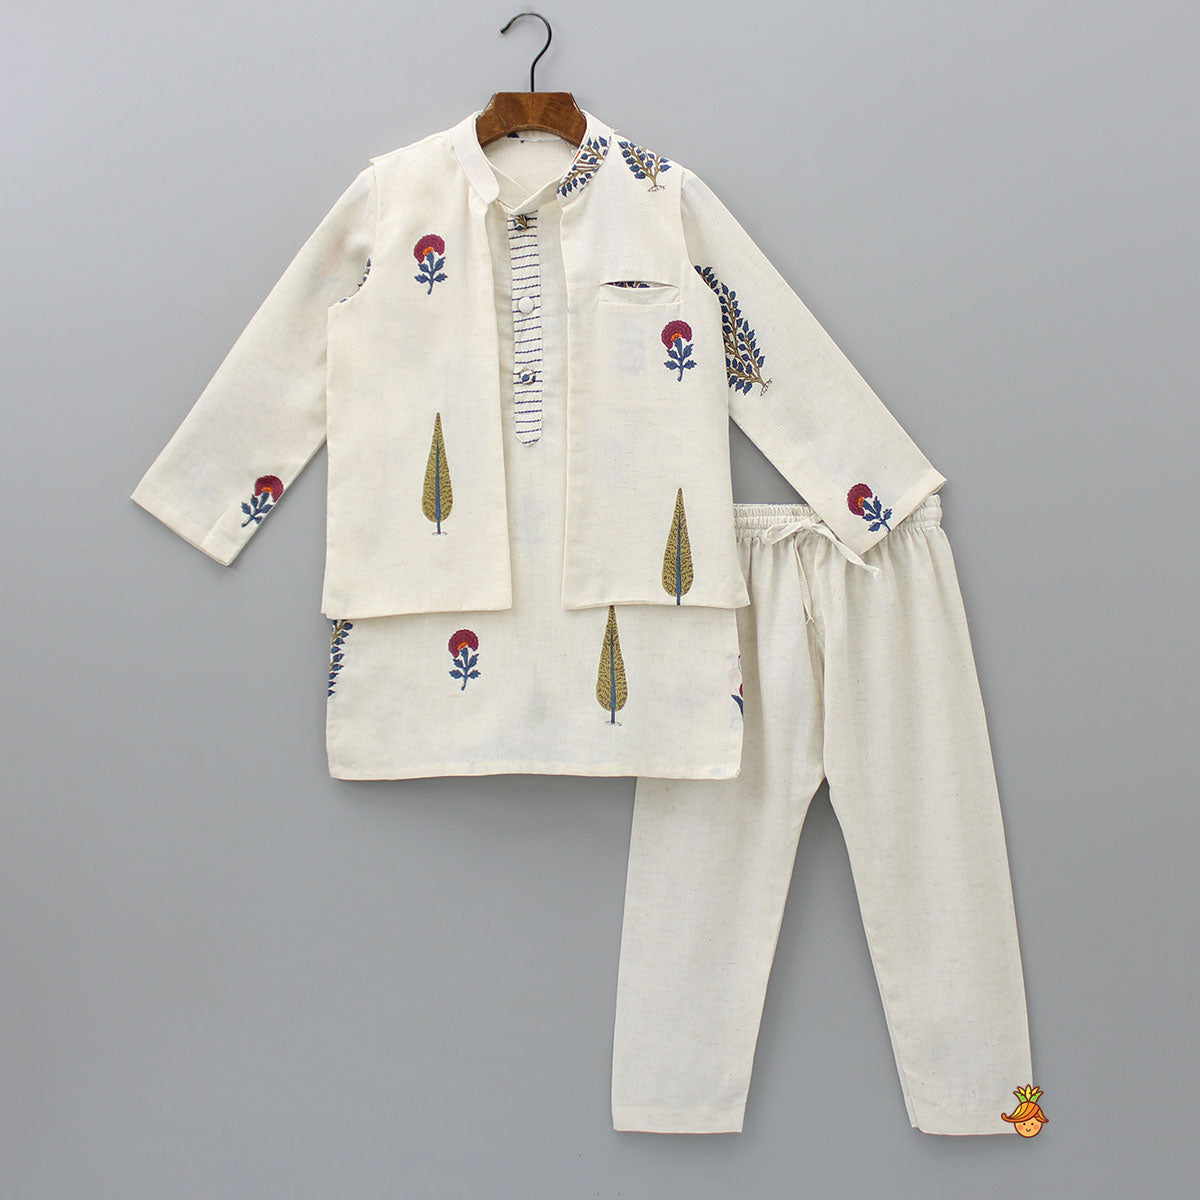 Mandarin Collar Kurta With Pocket Detail Jacket And Pyjama